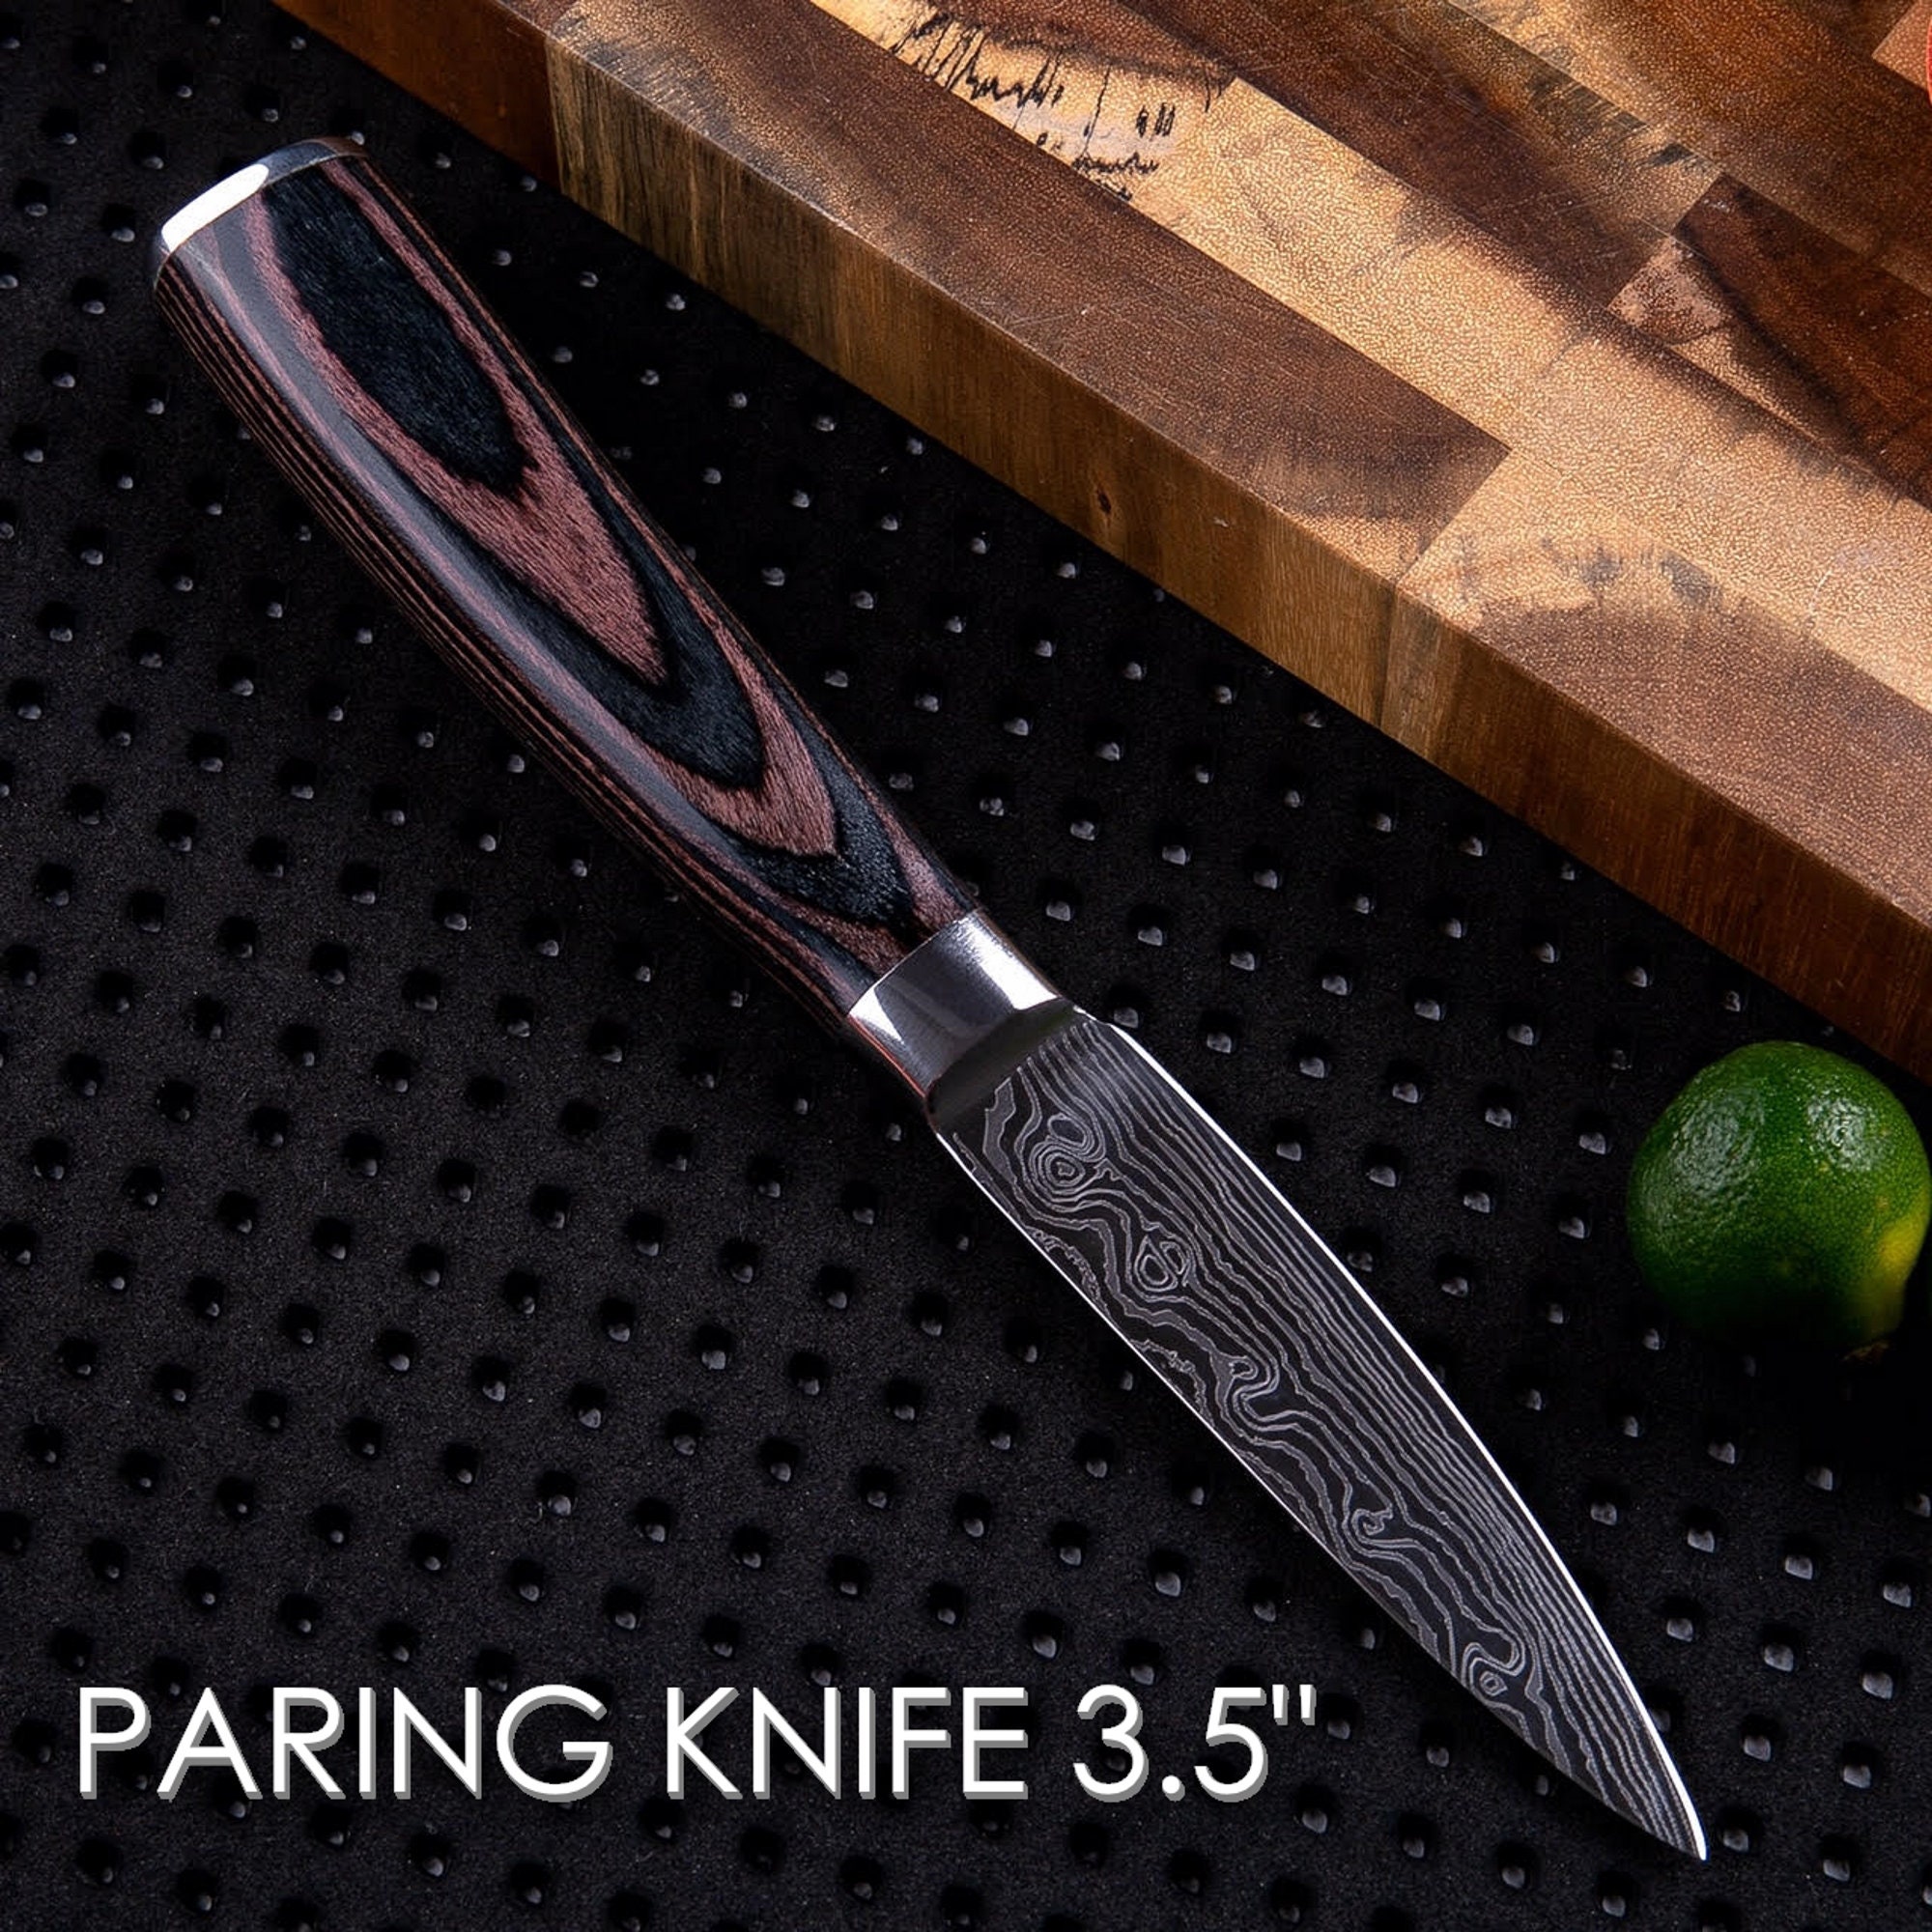 KUMA Paring Knife Pro Bolster Stainless Steel Japanese Kitchen Knives 